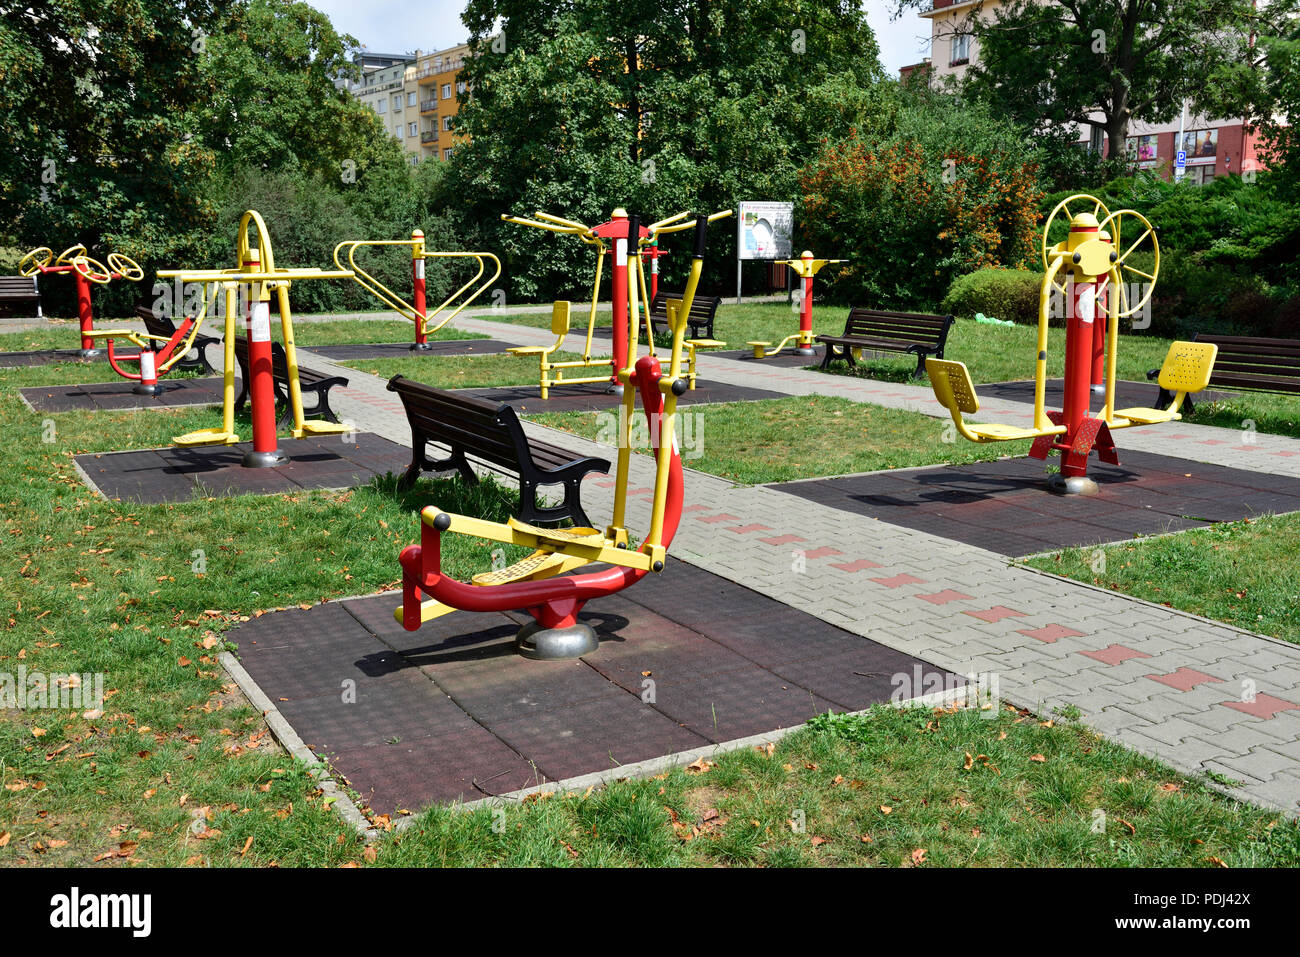 Im Freien öffentlichen übung Ausrüstung für Senioren im Park, Port Park pro seniory", Prag, Tschechische Republik Stockfoto